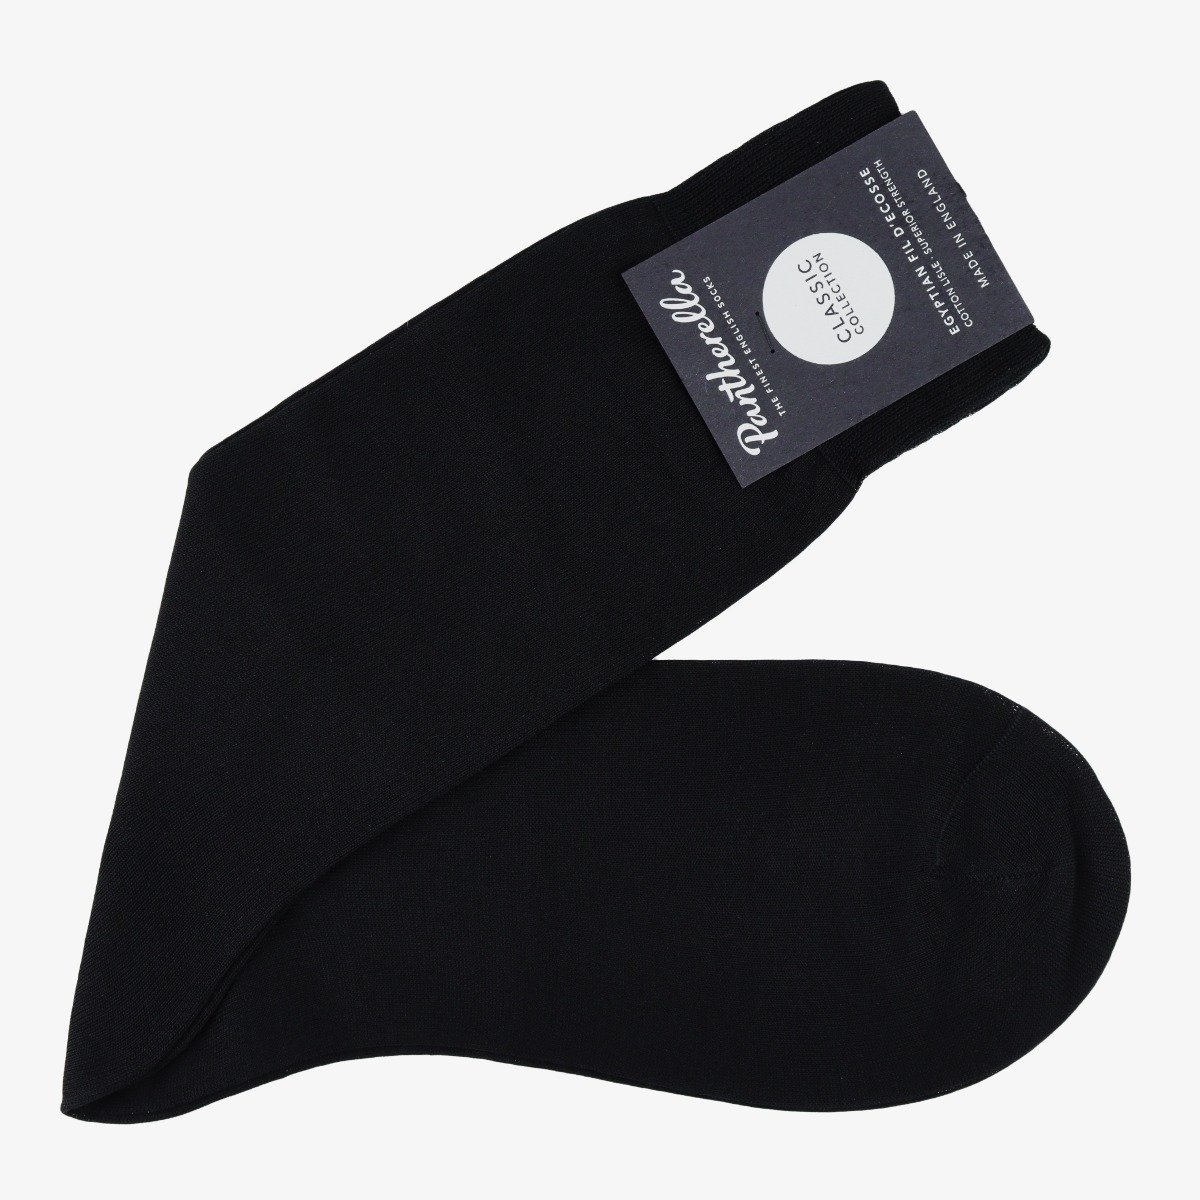 Pantherella Sackville black socks